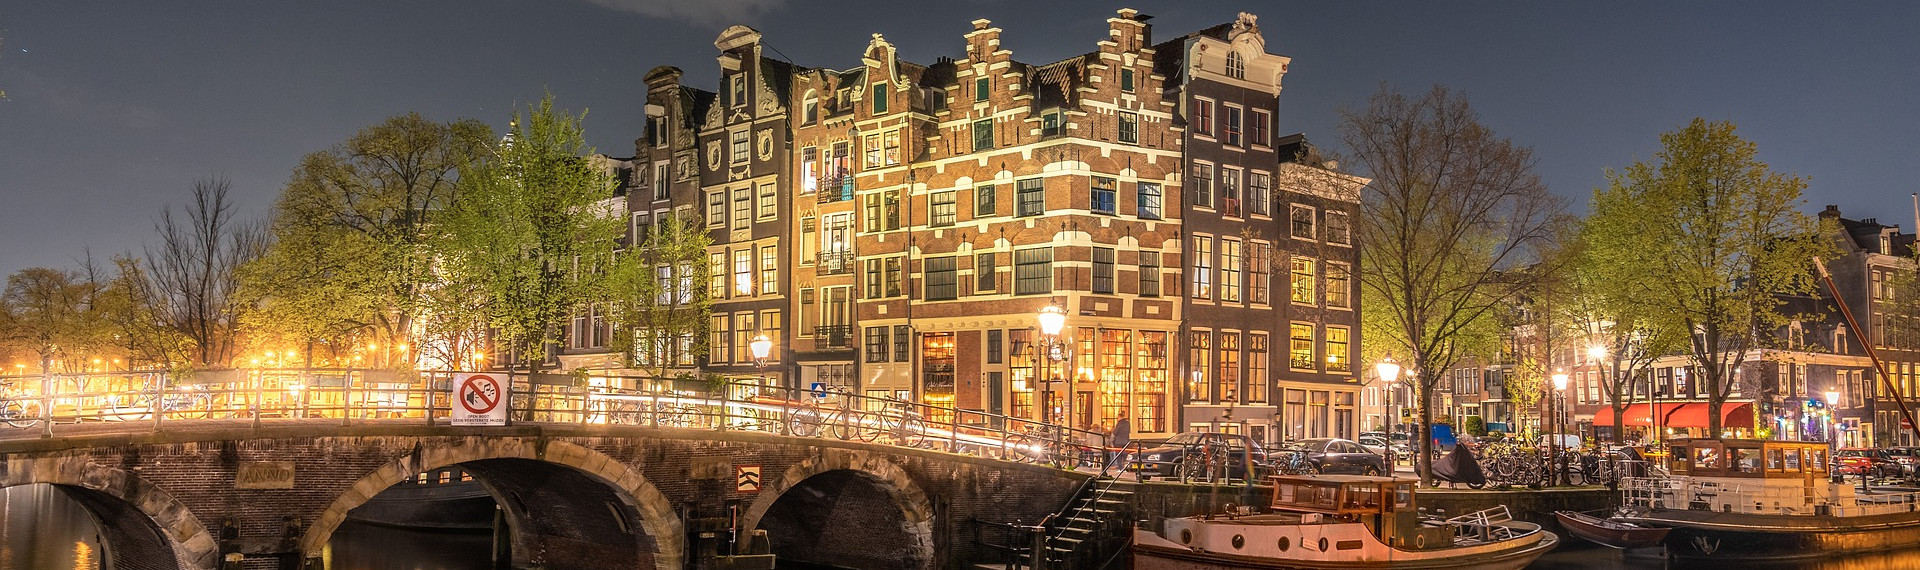 Amsterdam City Center Houses STOCK